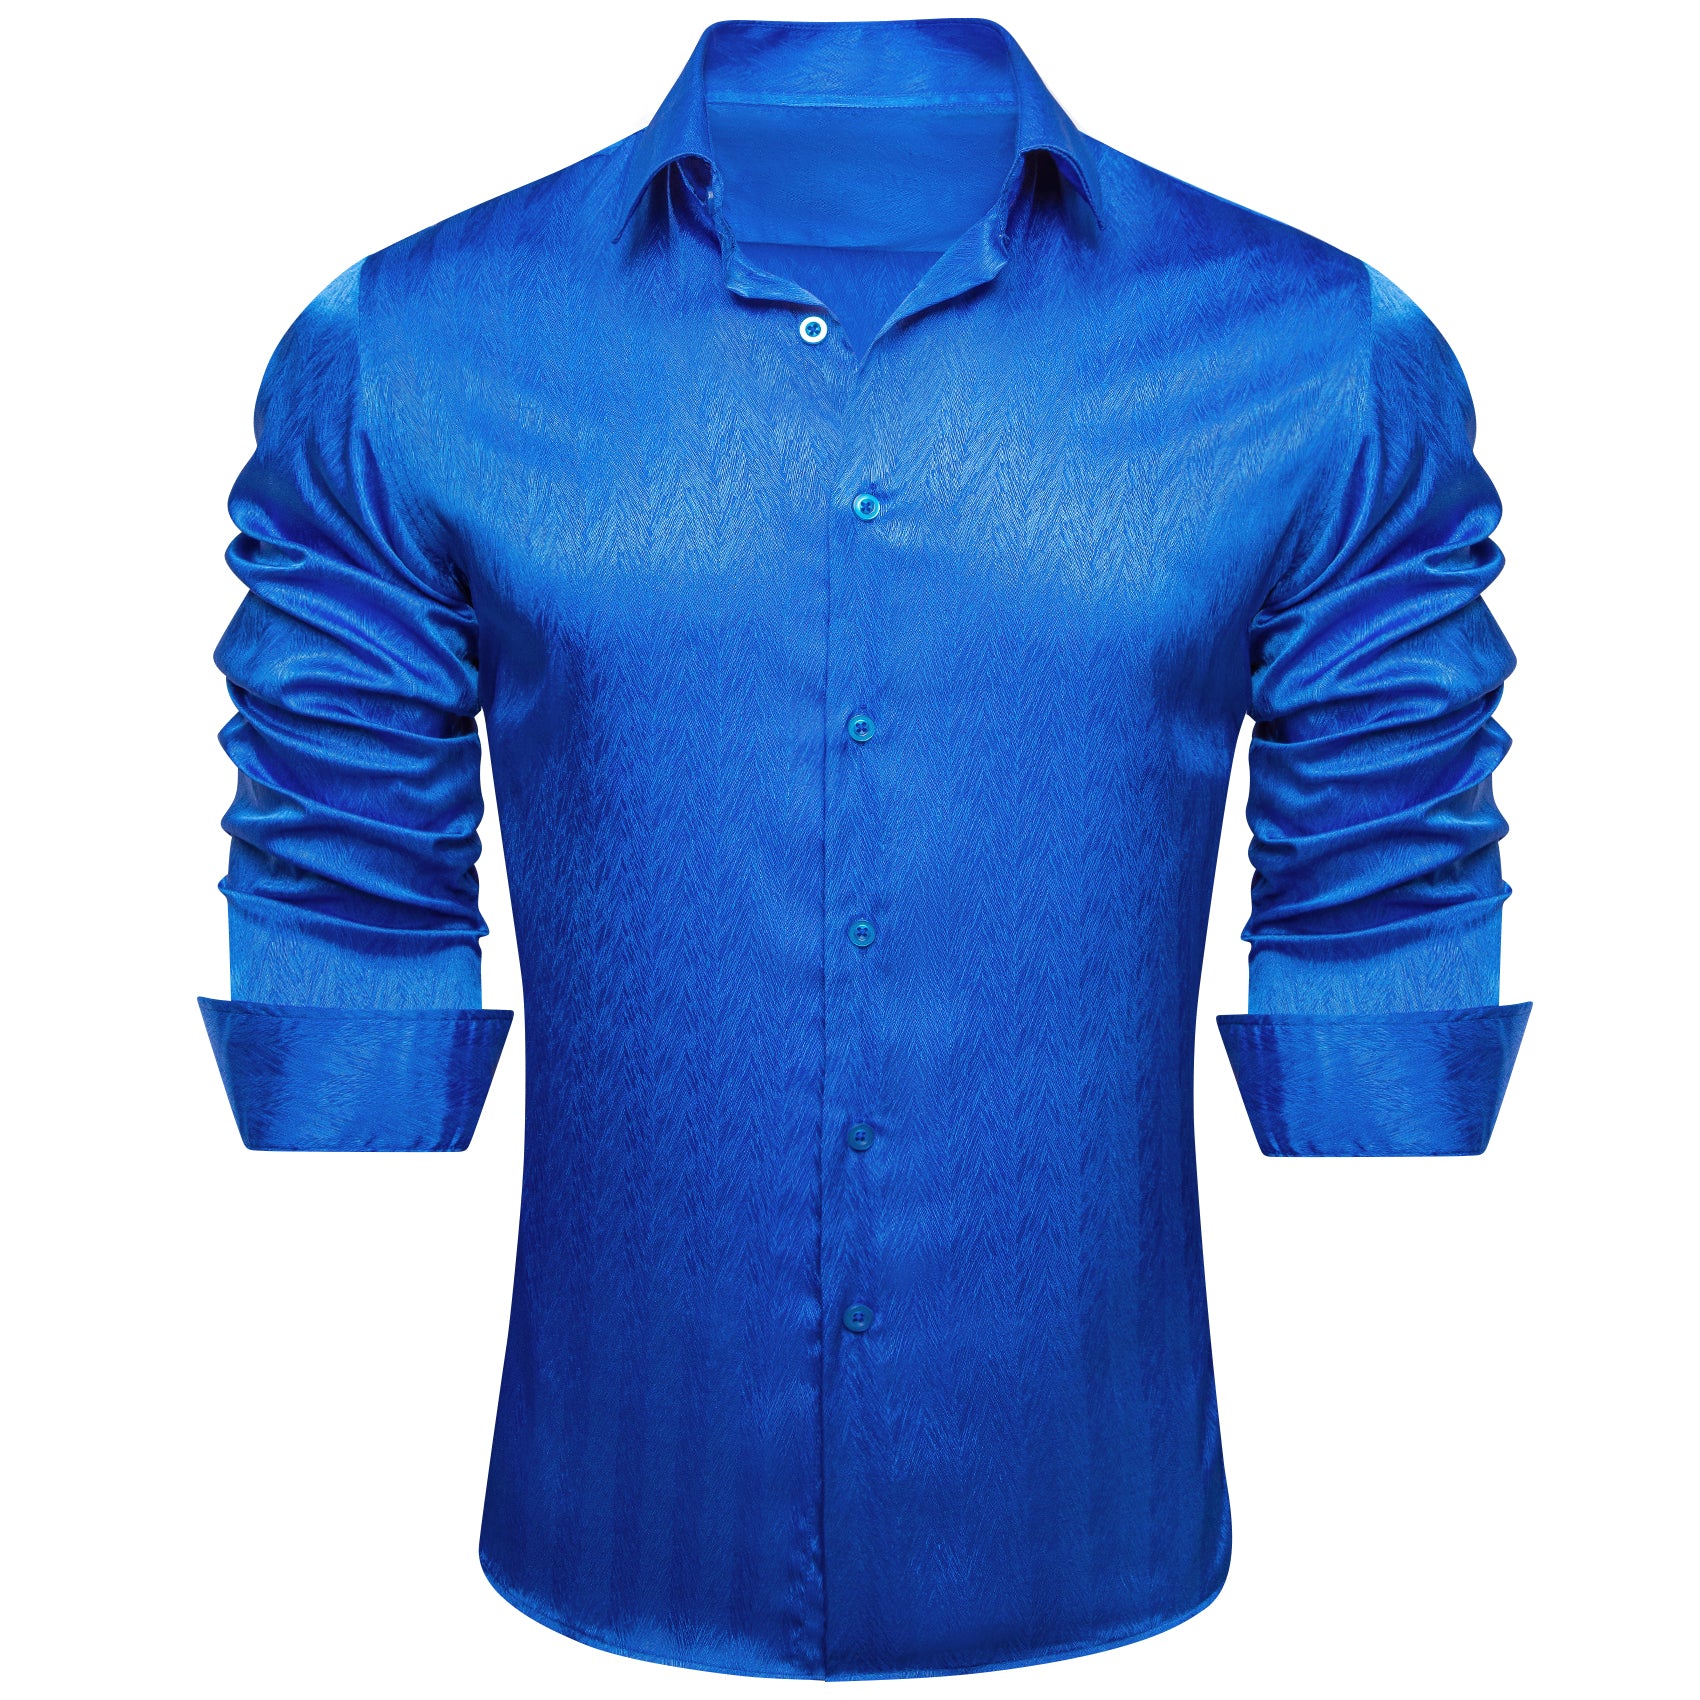 Barry.wang Cobalt Blue Solid Silk Men's Shirt